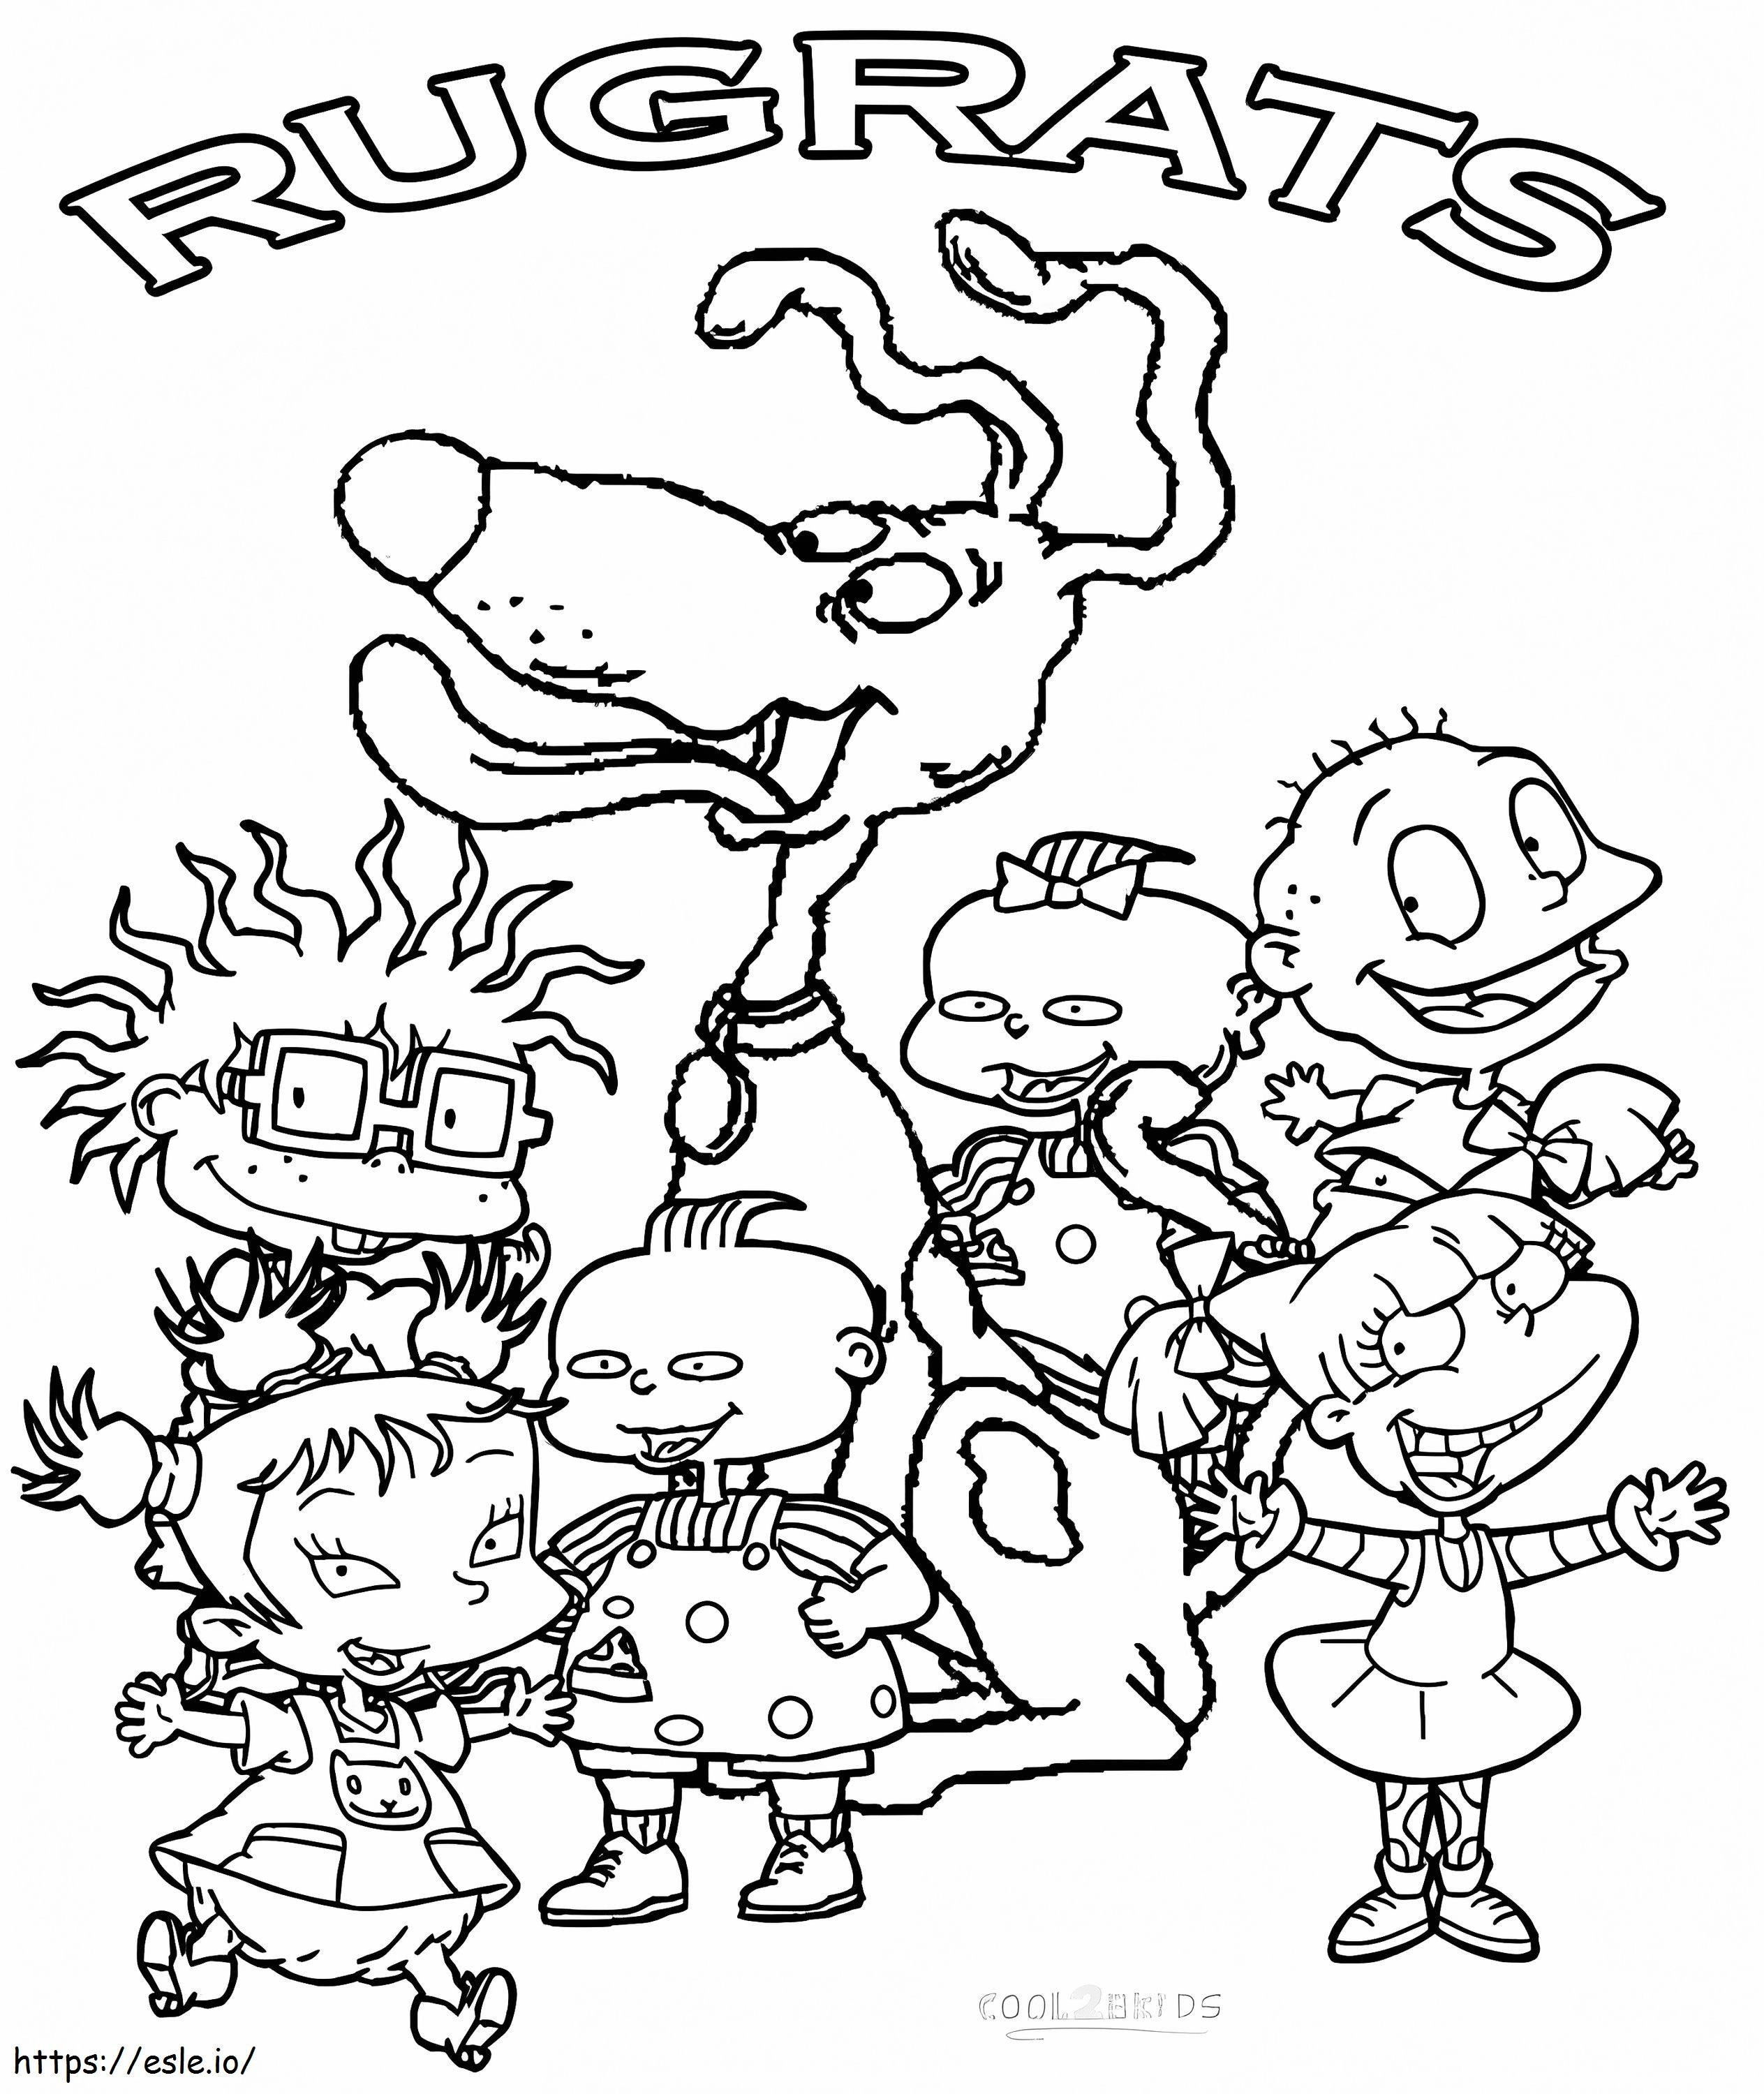 Personaggi Rugrats da colorare